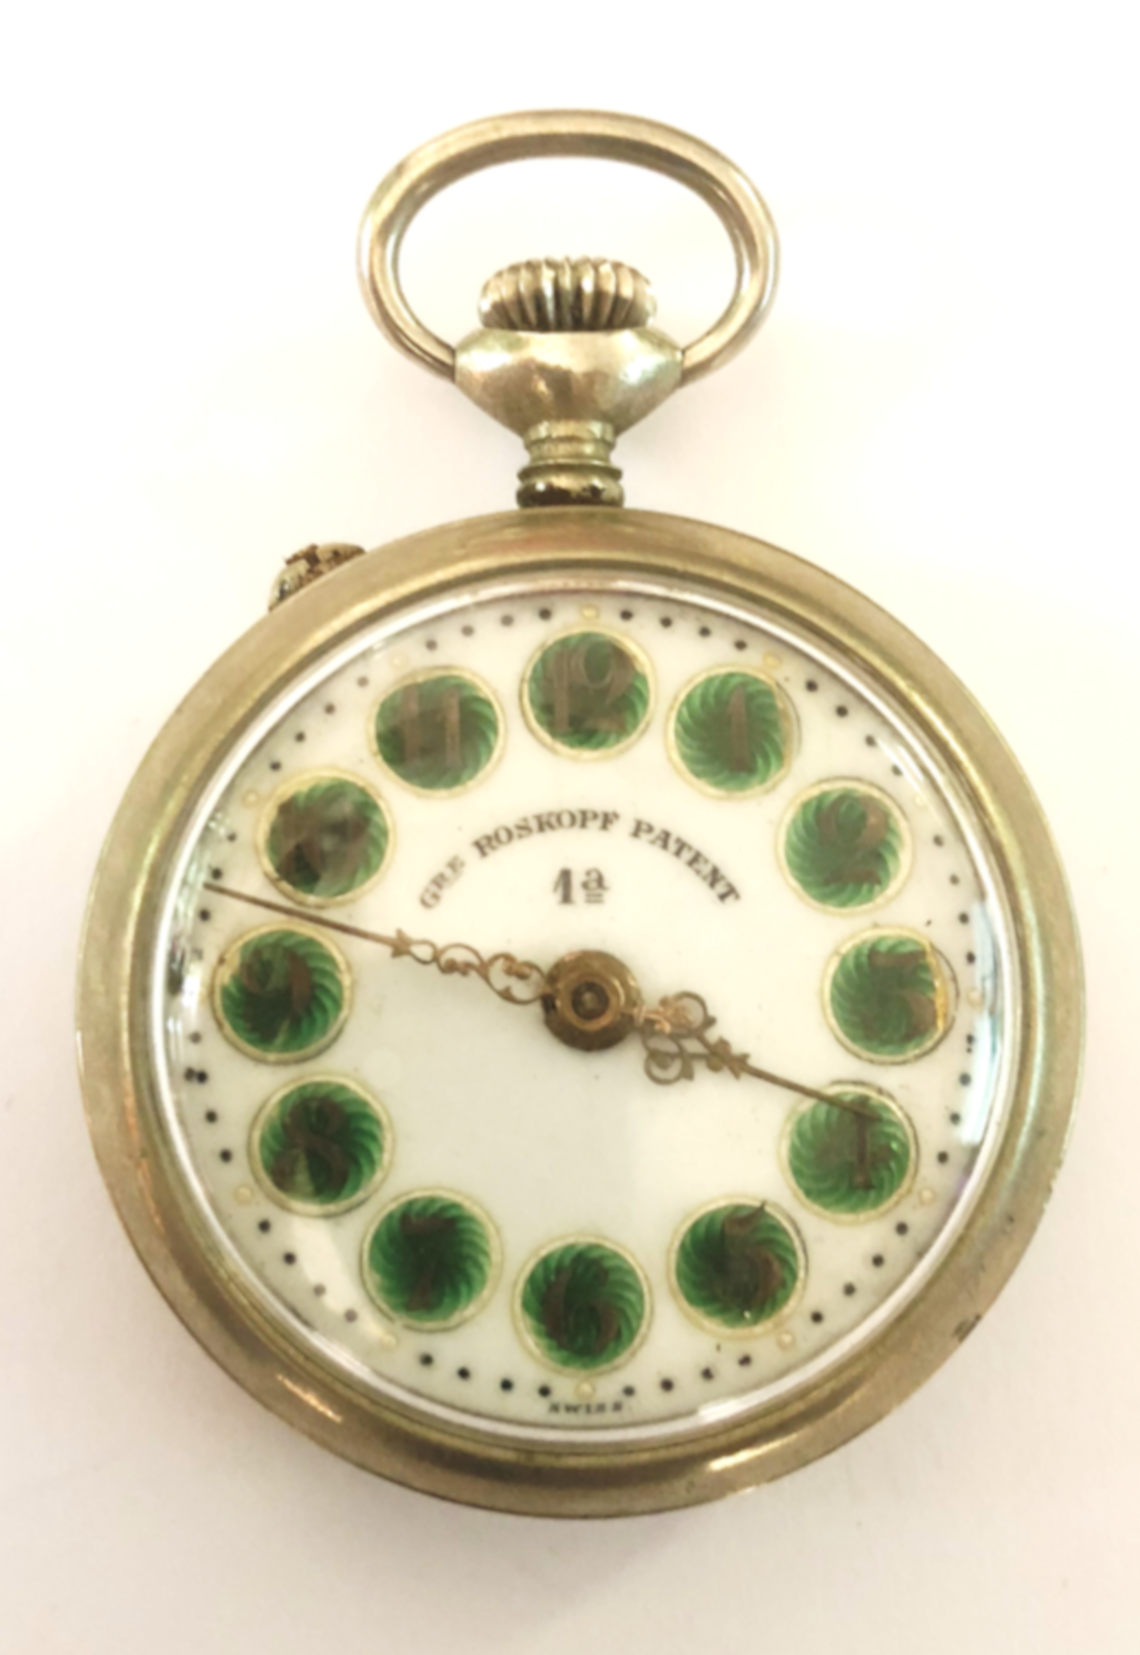 Reloj estilo lepine de manufactura ROSKOPF PATENT, 1ª, Suiza. Museo Internacional de Alta Relojería de